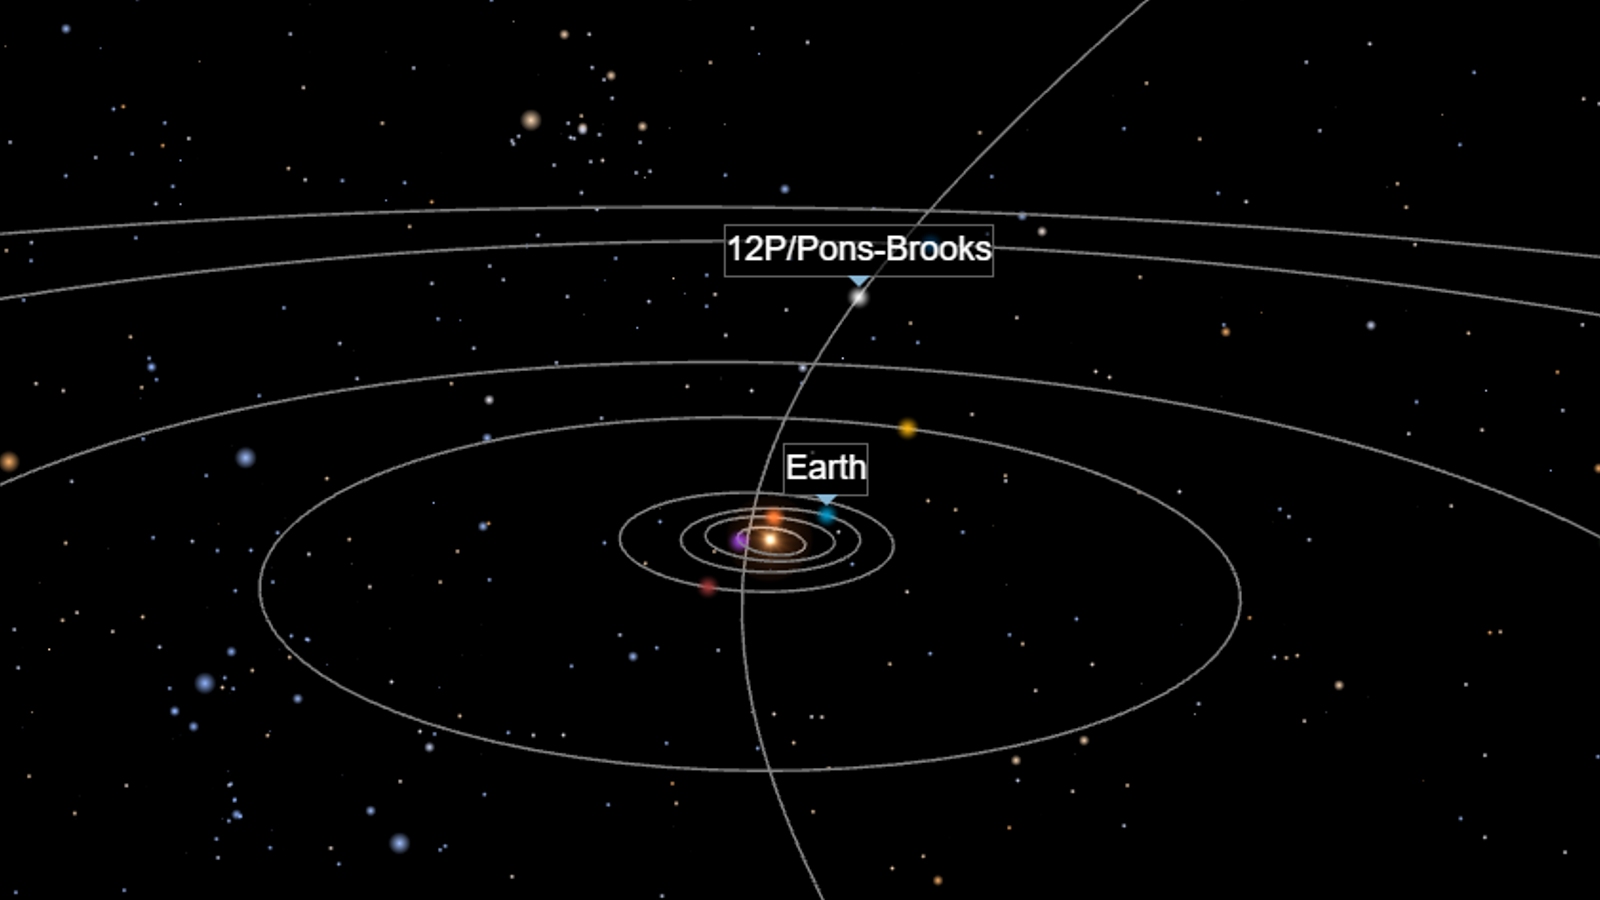 Комета понса брукса где наблюдать в москве. Комета 12p Pons-Brooks. Размеры комет. Комета Понса Брукса. Комета Pons-Brooks Orbit.